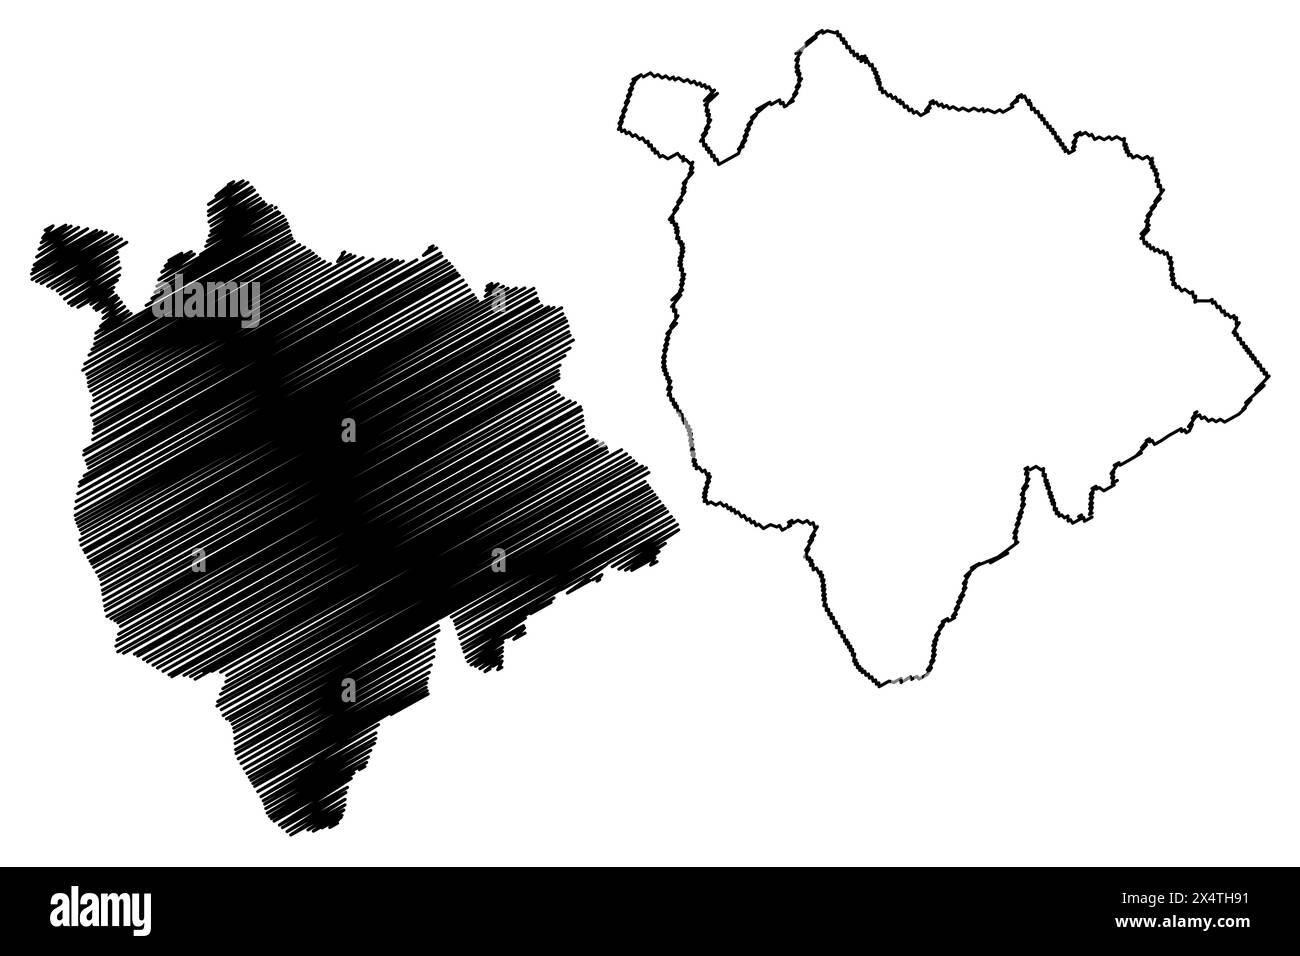 Bezirk Mattersburg (Republik Österreich oder Österreich, Staat Burgenland) Karte Vektordarstellung, Scribble Sketch Karte Bezirk Mattersburg Karte Stock Vektor